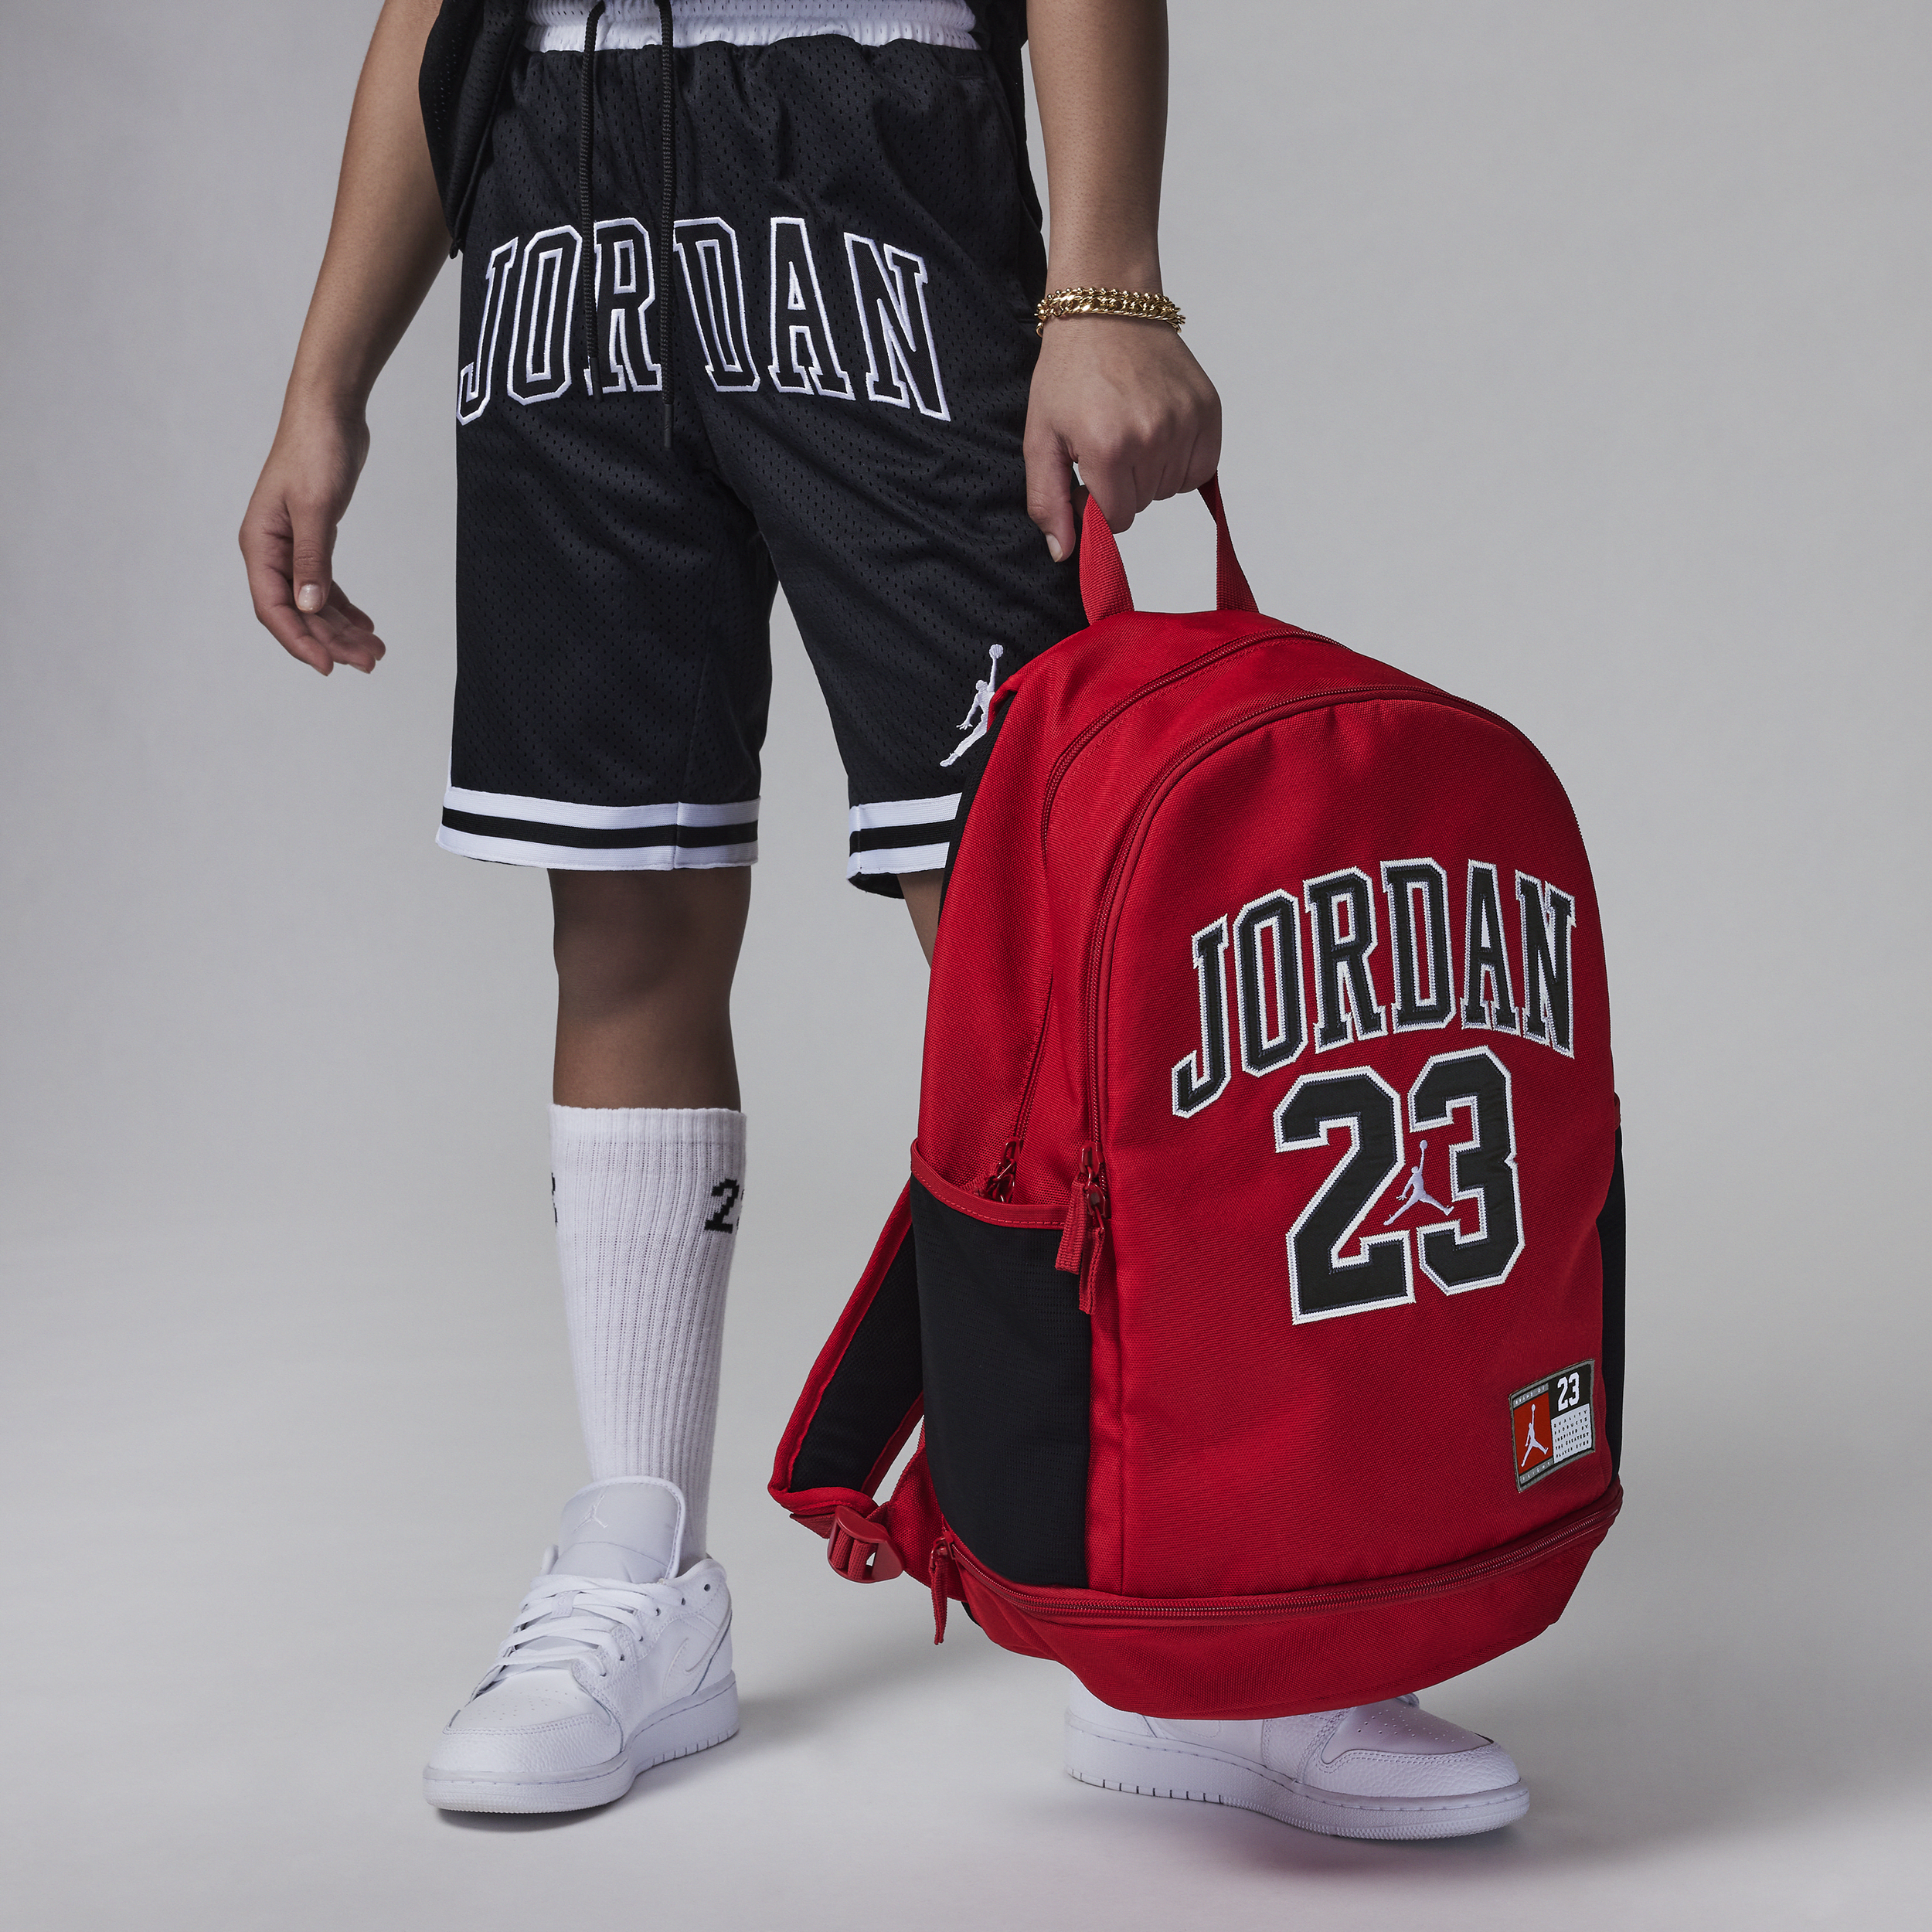 Jordan Jersey Backpack Mochila - Niño/a (27 l) - Rojo